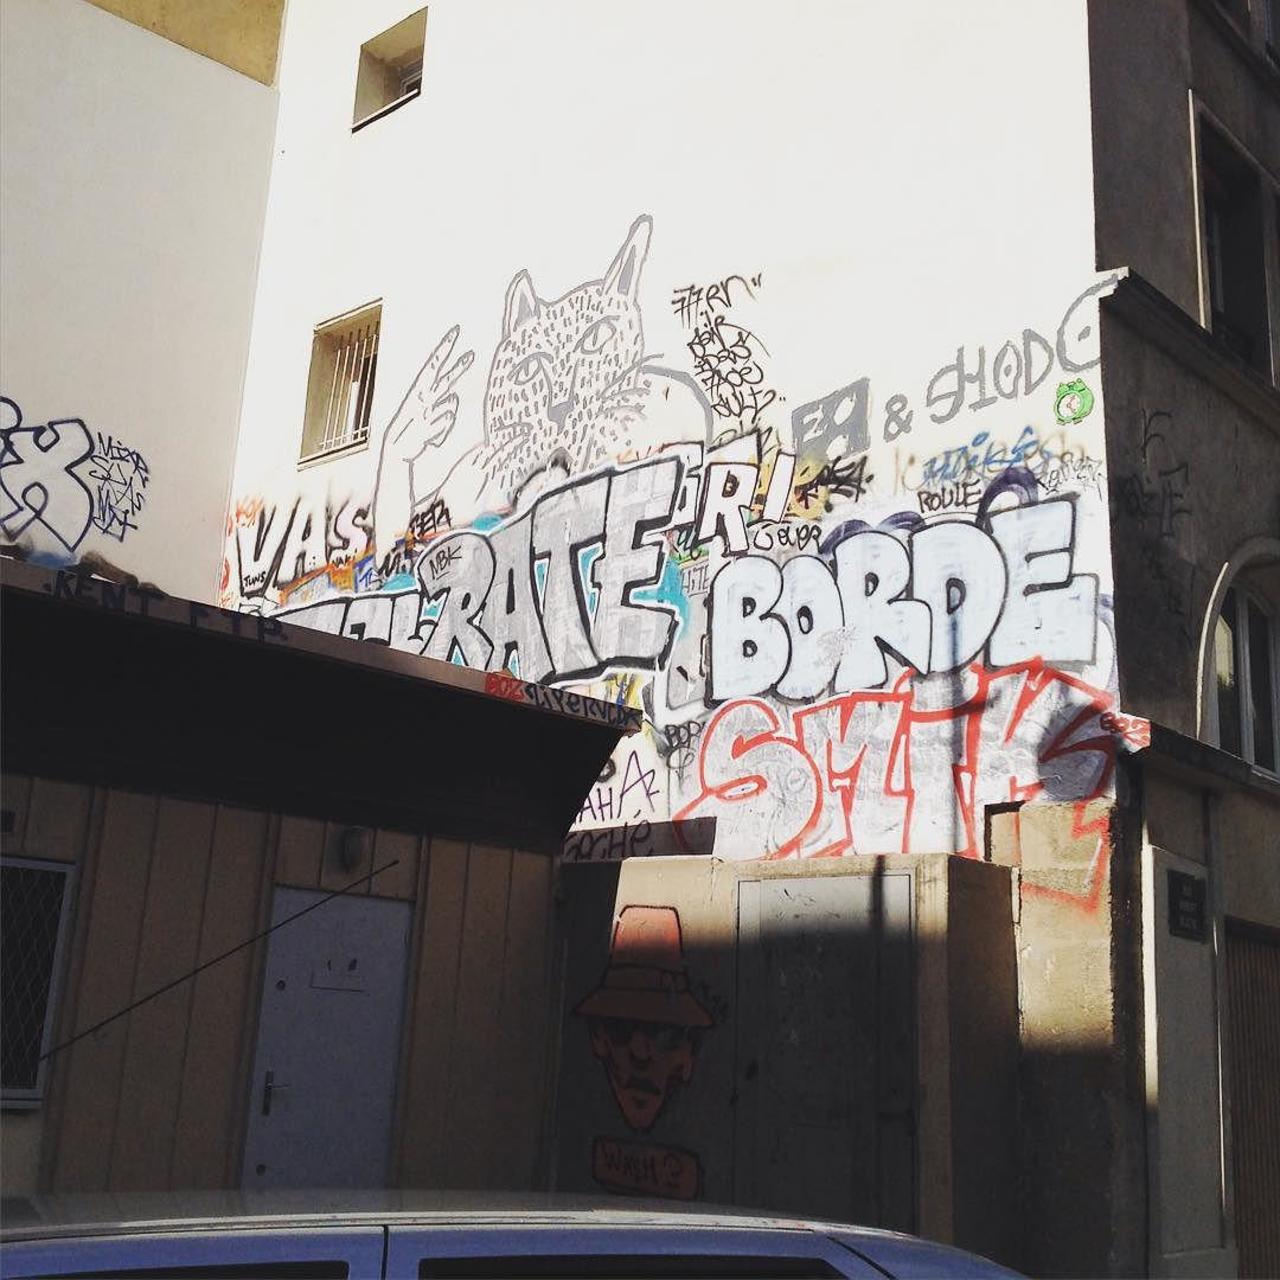 circumjacent_fr: #Paris #graffiti photo by emmabou66 http://ift.tt/1MPtBnE #StreetArt http://t.co/N0go1FeCtZ